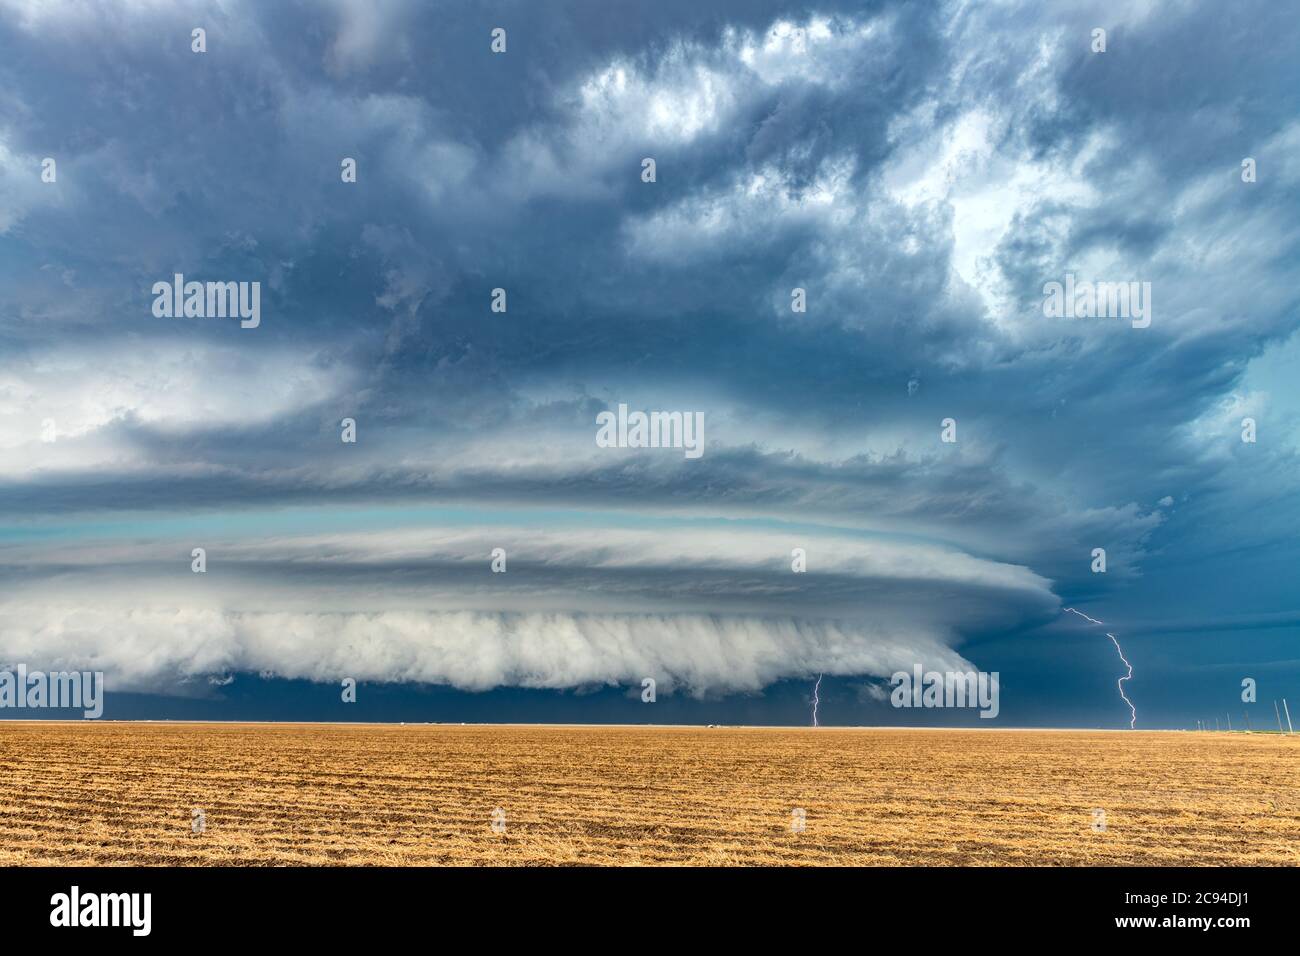 Ein Mesocyclone Wetter supercell, die eine Pre-Tornado-Bühne ist, passiert die Great Plains während strömende regen und knackende Blitz Highlight der ho Stockfoto